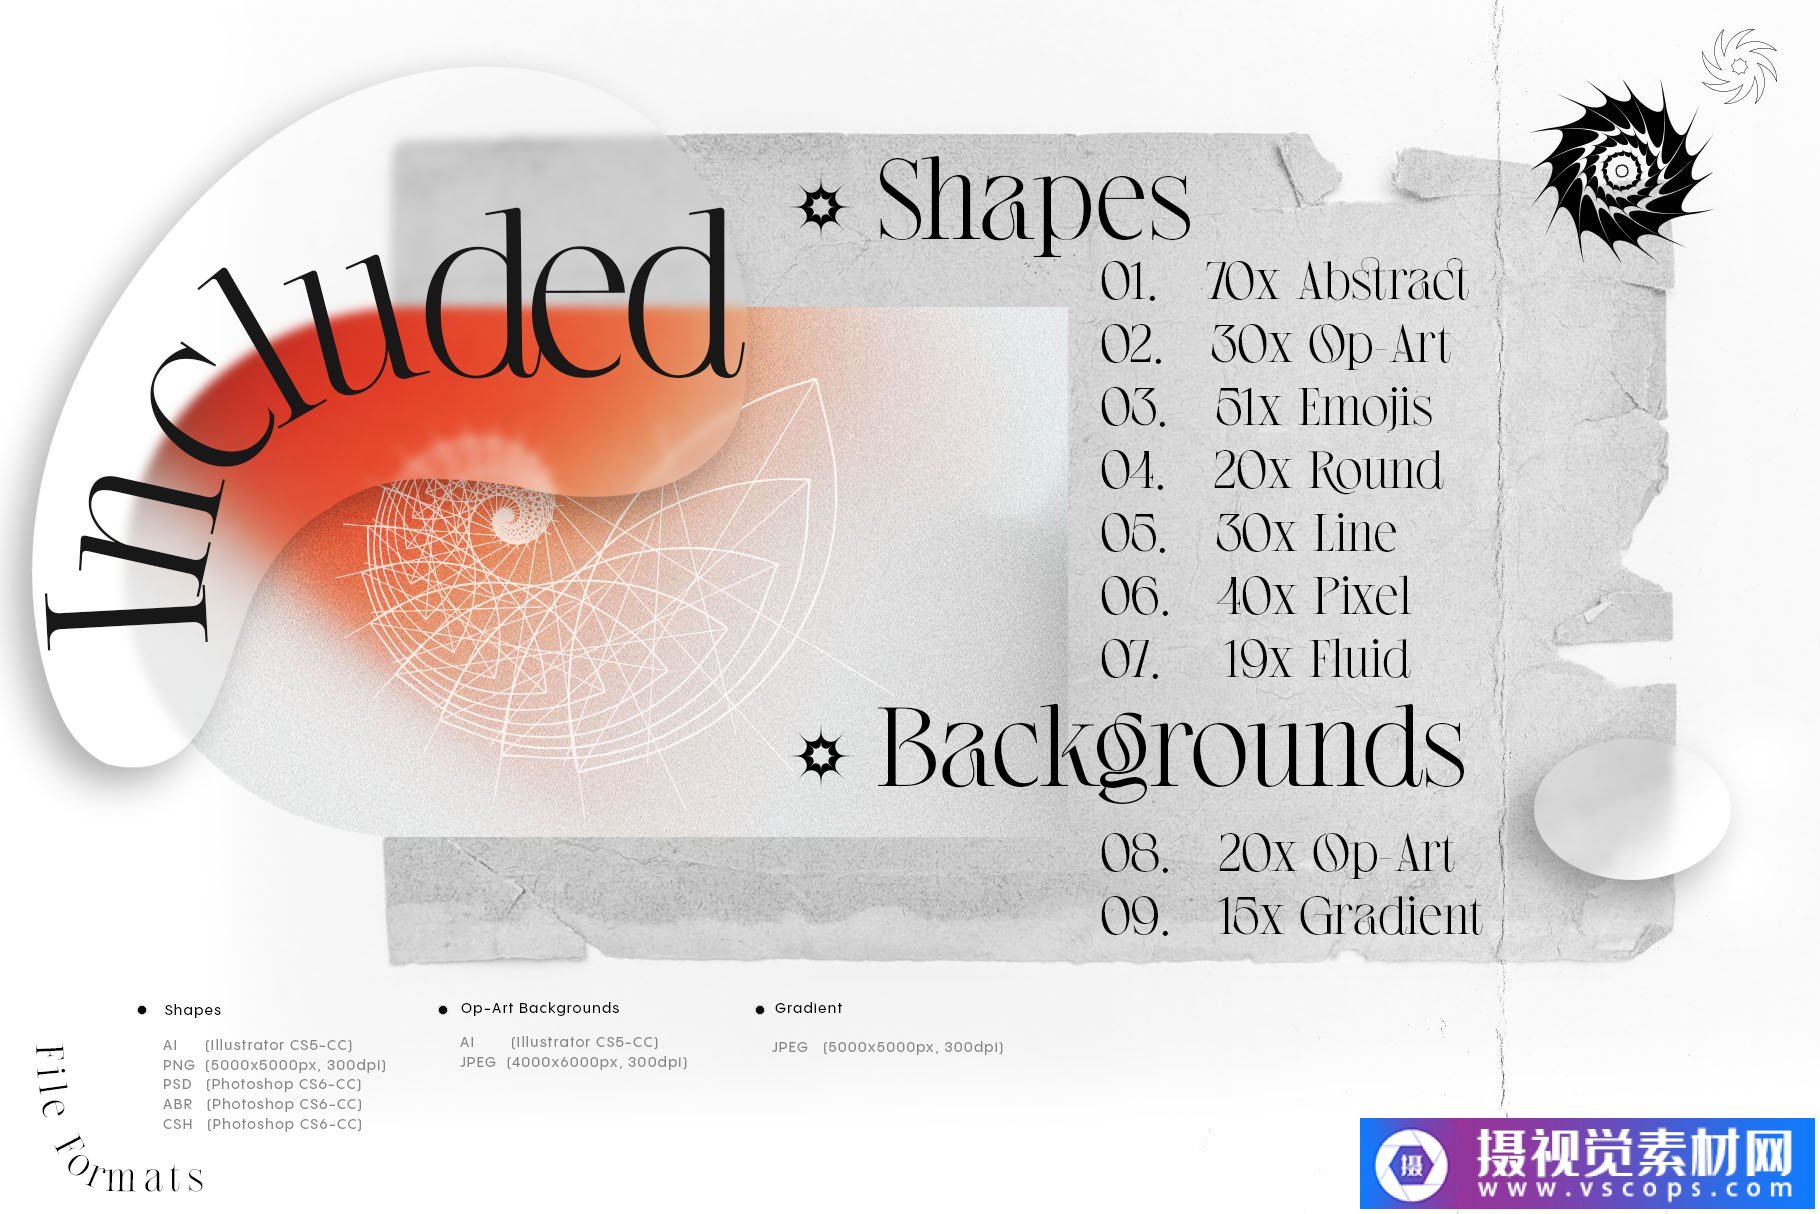 复古未来派欧普艺术抽象几何形状颗粒渐变纹理素材合集包 Shapes and Backgrounds Pack插图1